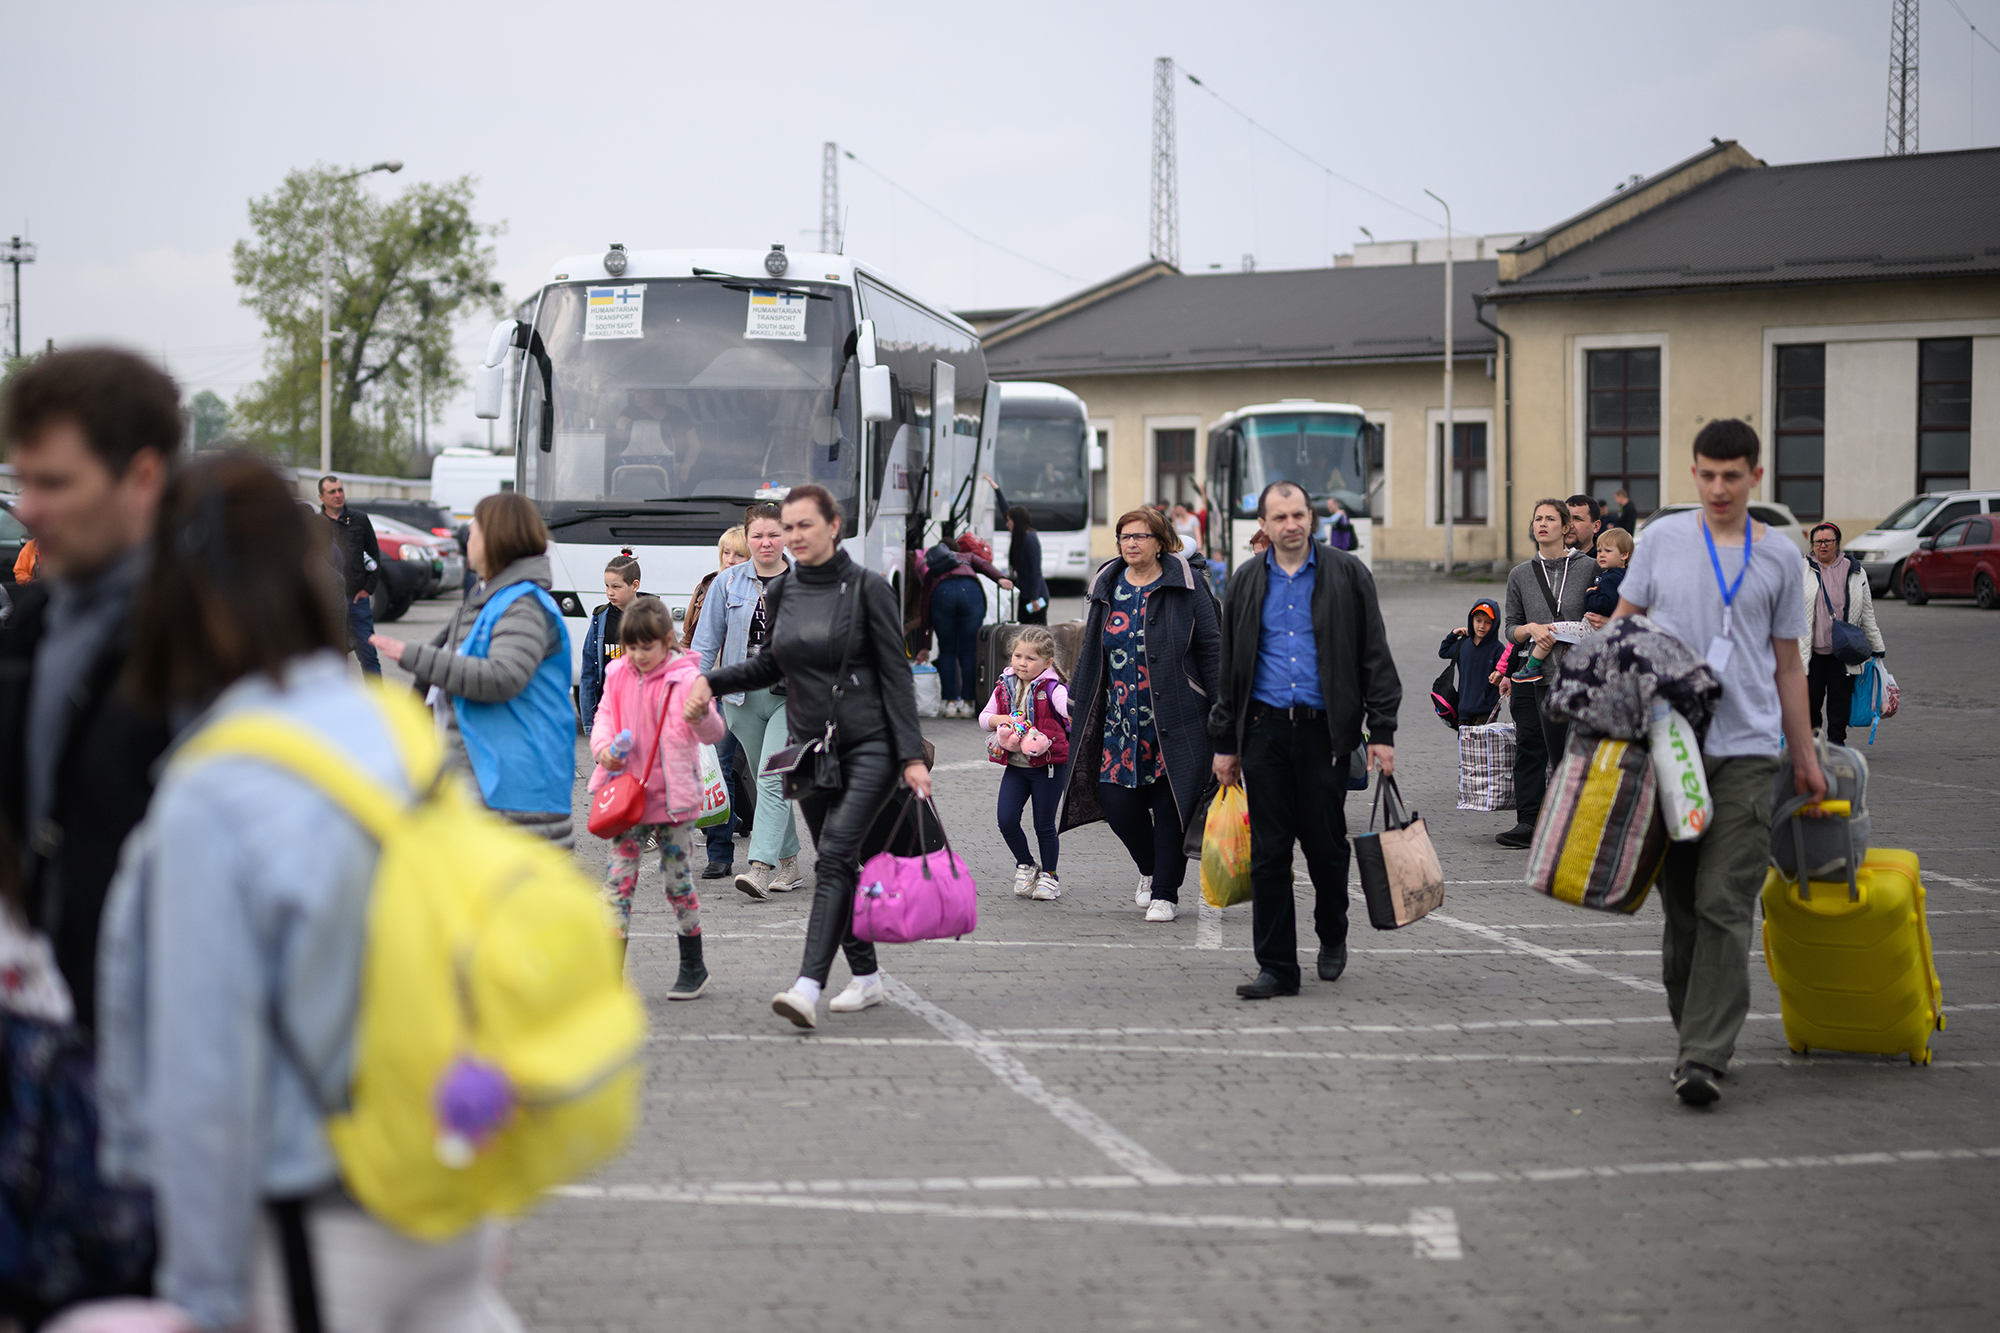 Украинцы в Польше предоставляют жилье новым беженцам за 40 злотых в день: подробности